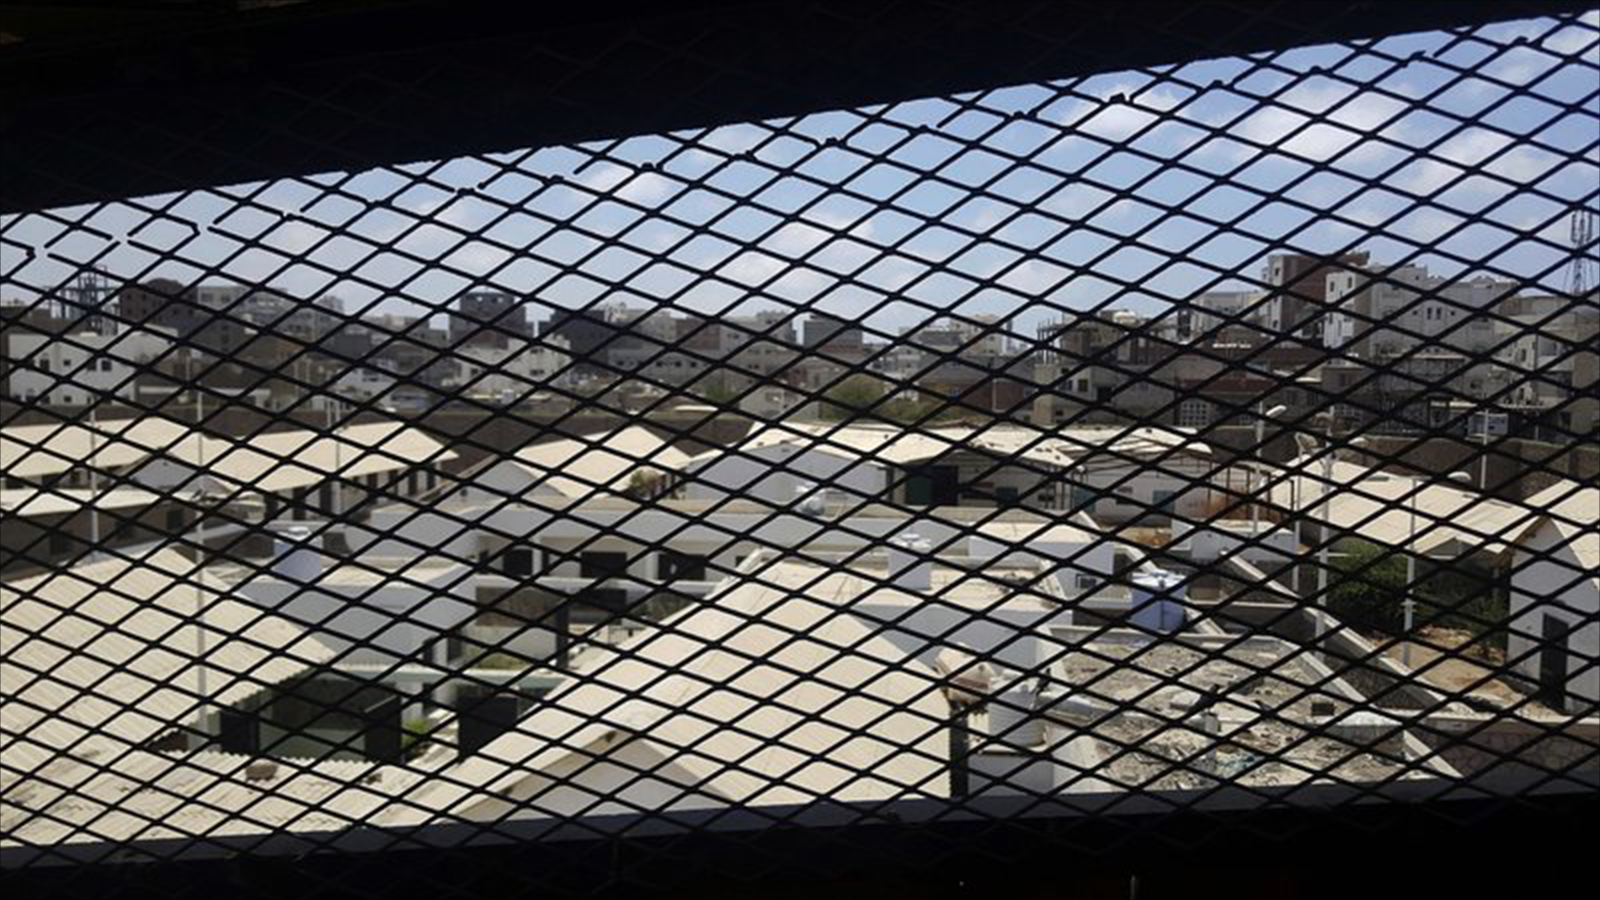 ‪وكالة أسوشيتد برس وثقت 18 سجنا سريا باليمن تديرها الإمارات‬ (أسوشيتد برس)